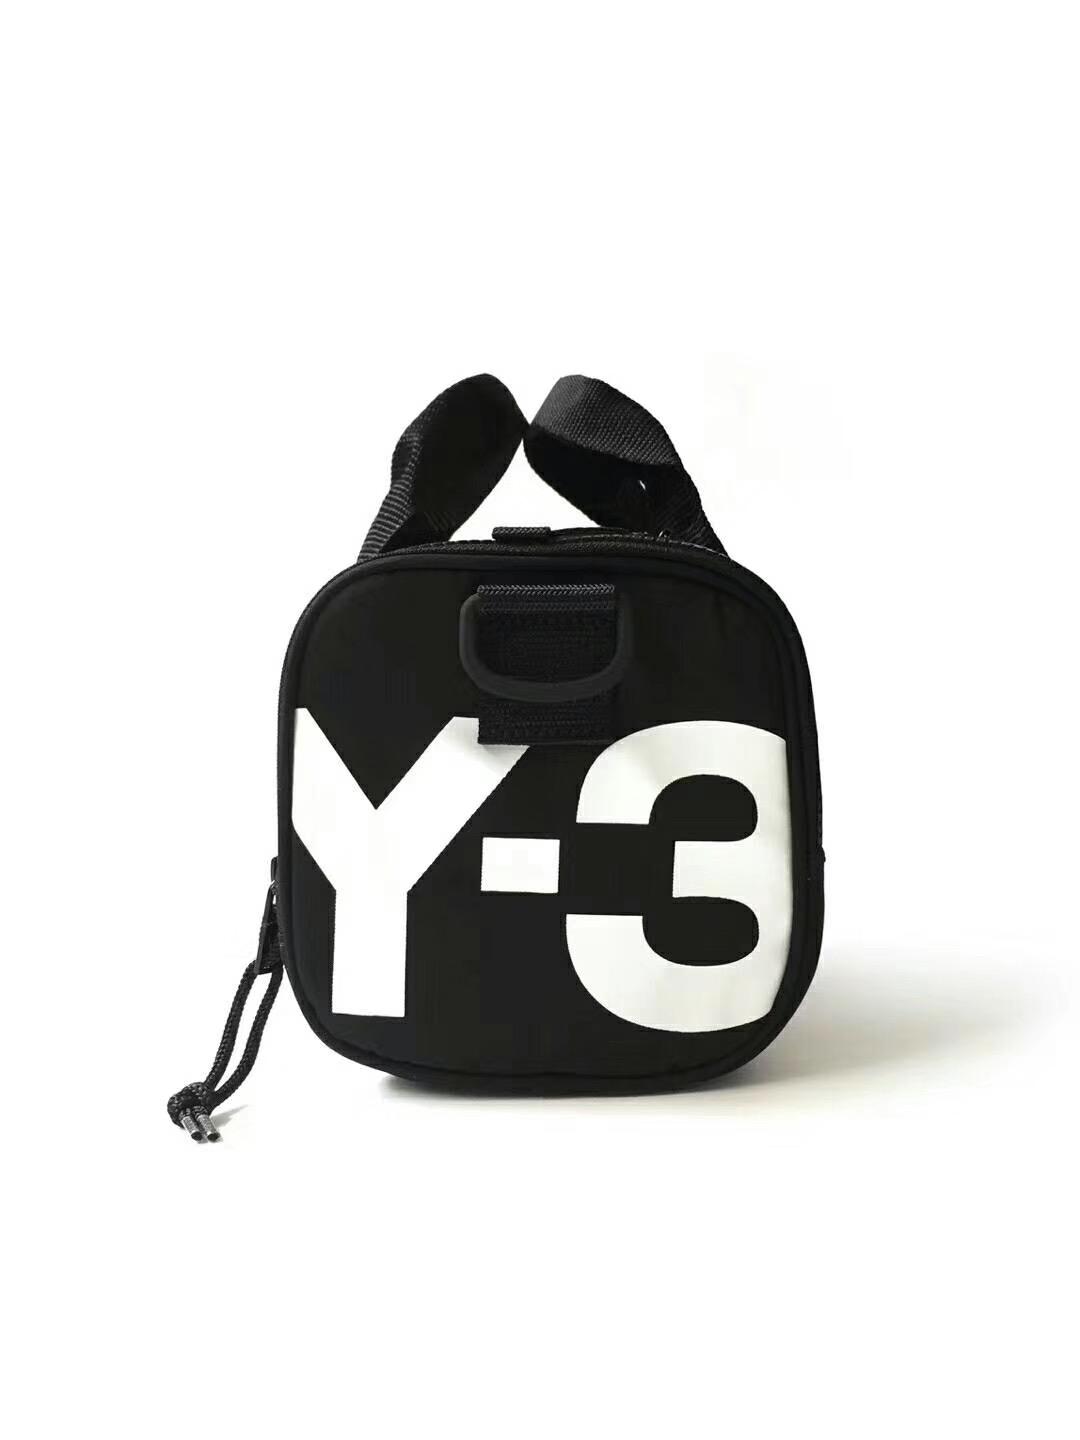 Y-3 YOHJI YAMAMOTO Spring Summer Mini Bag